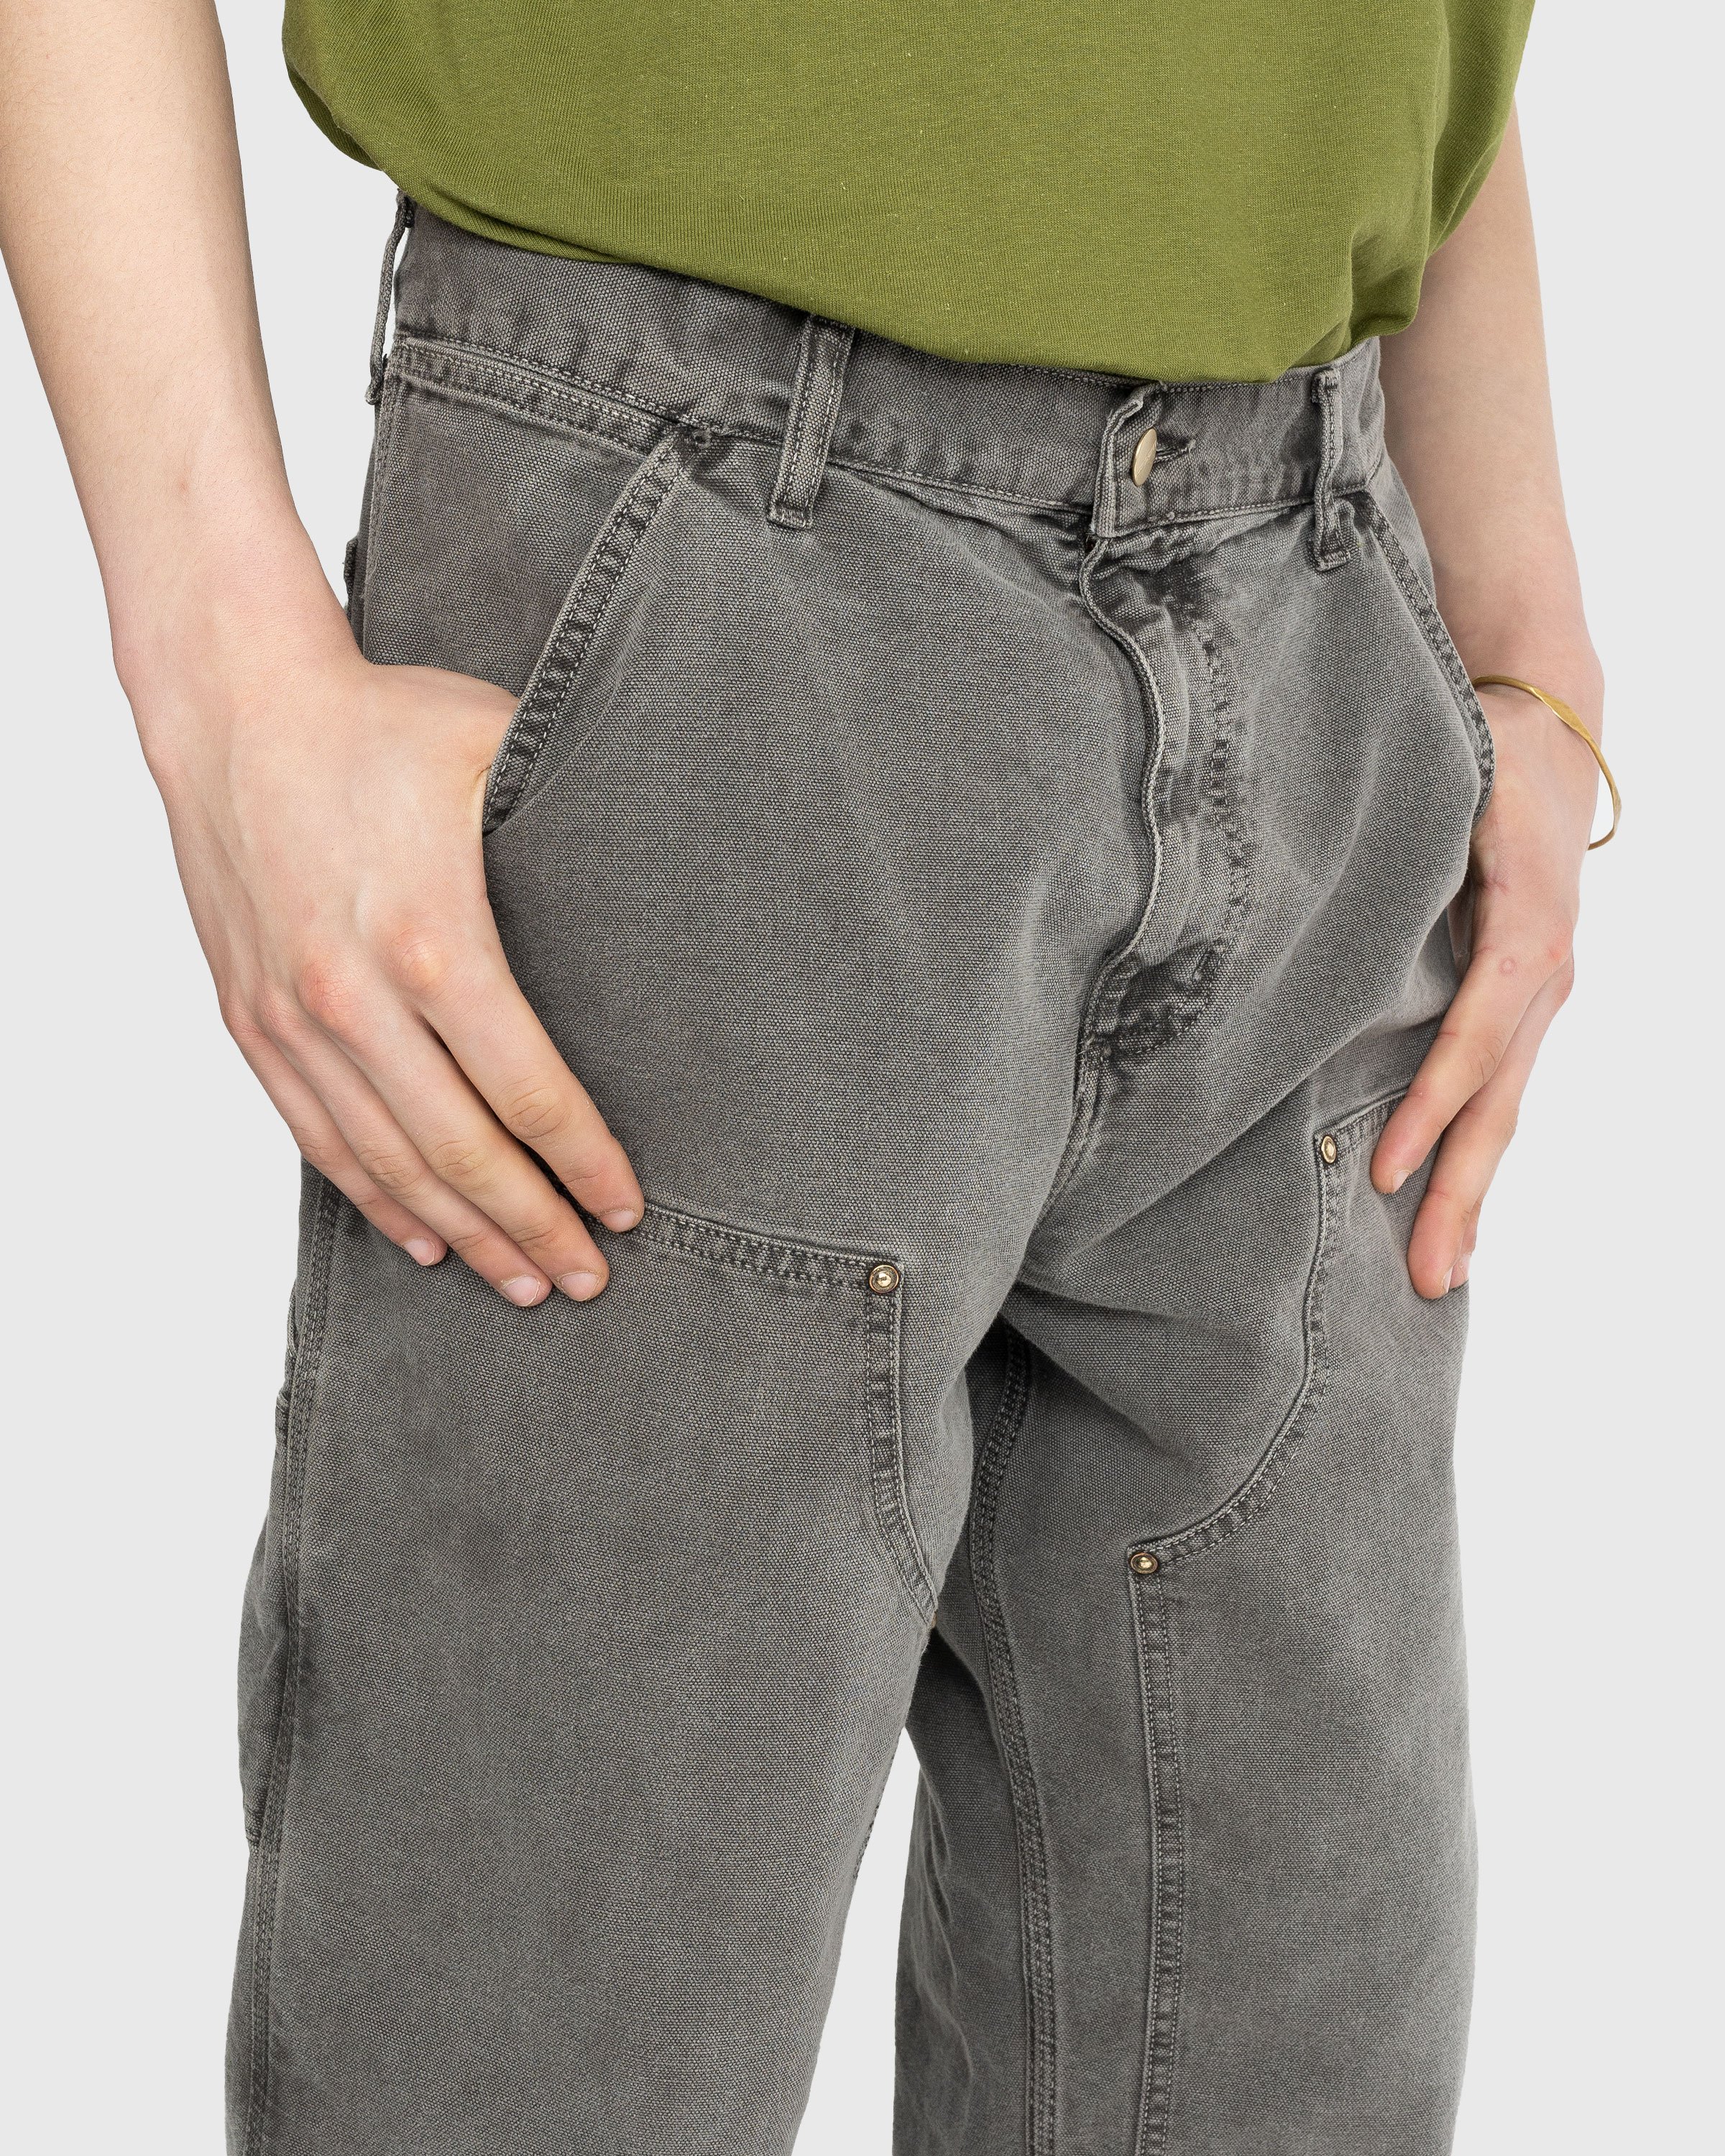 Carhartt WIP - Double Knee Pant Black Stonewashed - Clothing - Black - Image 5